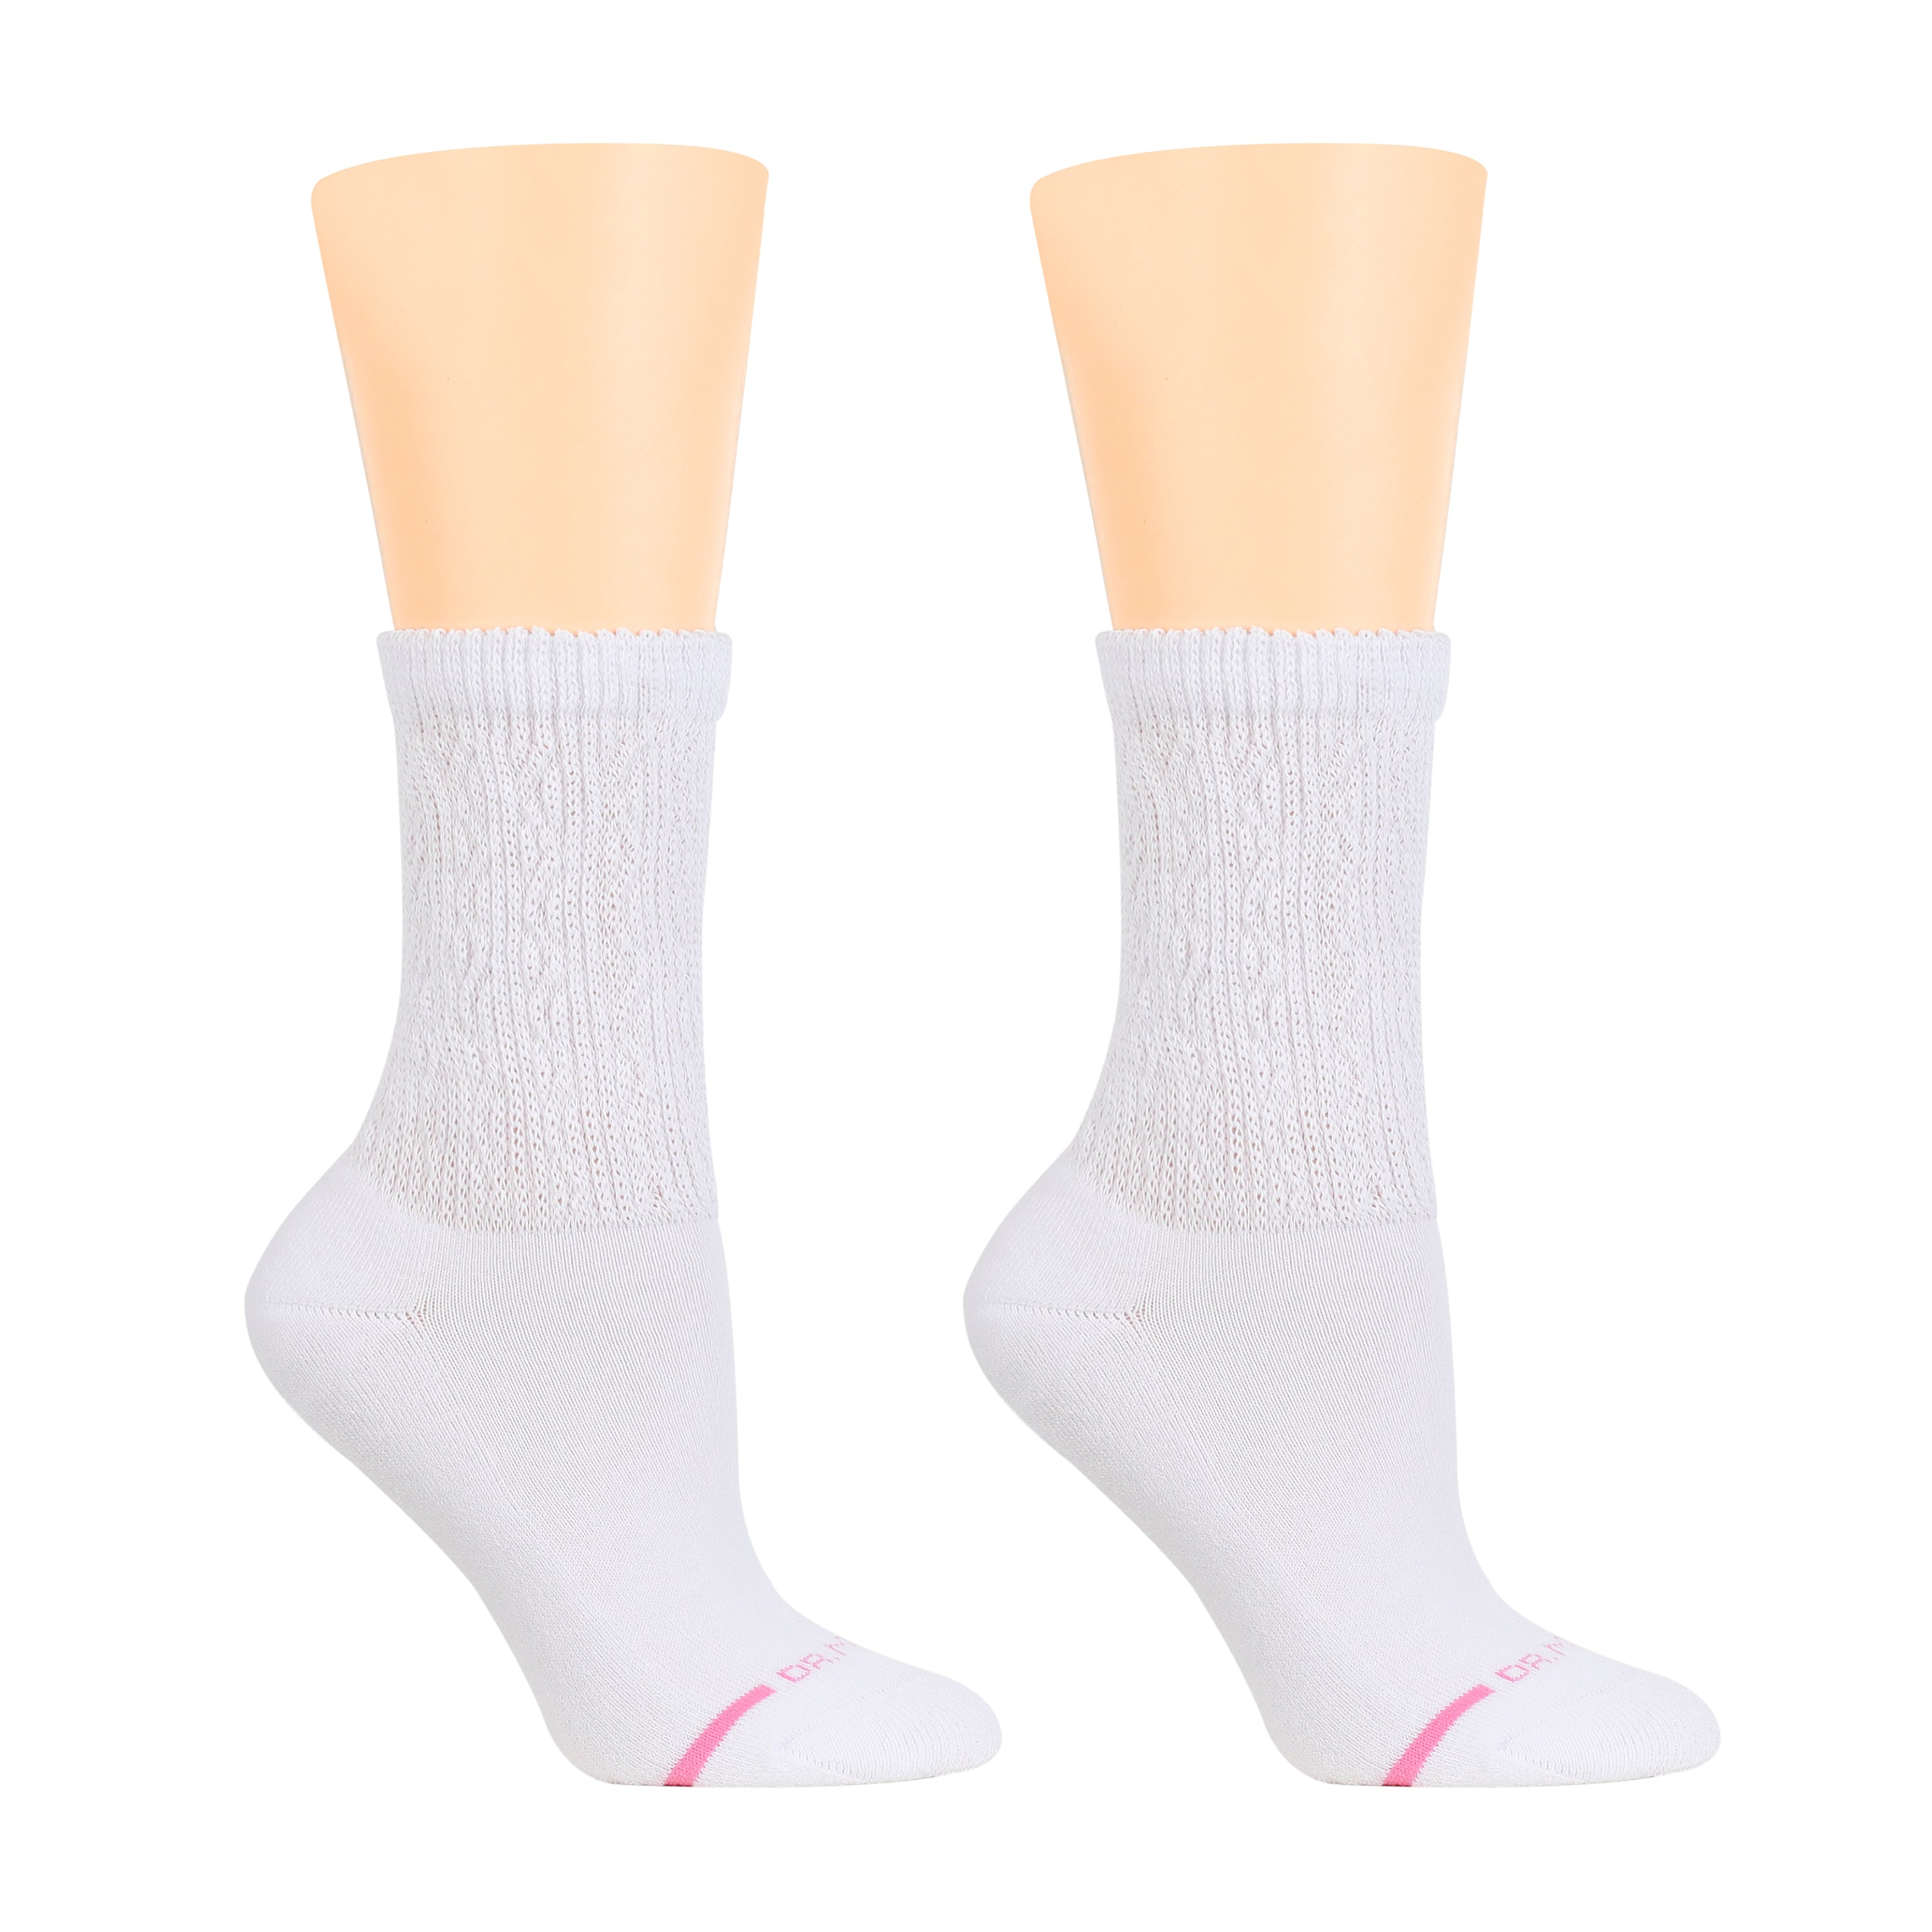 Comfort Top Socks For Women, Dr. Motion